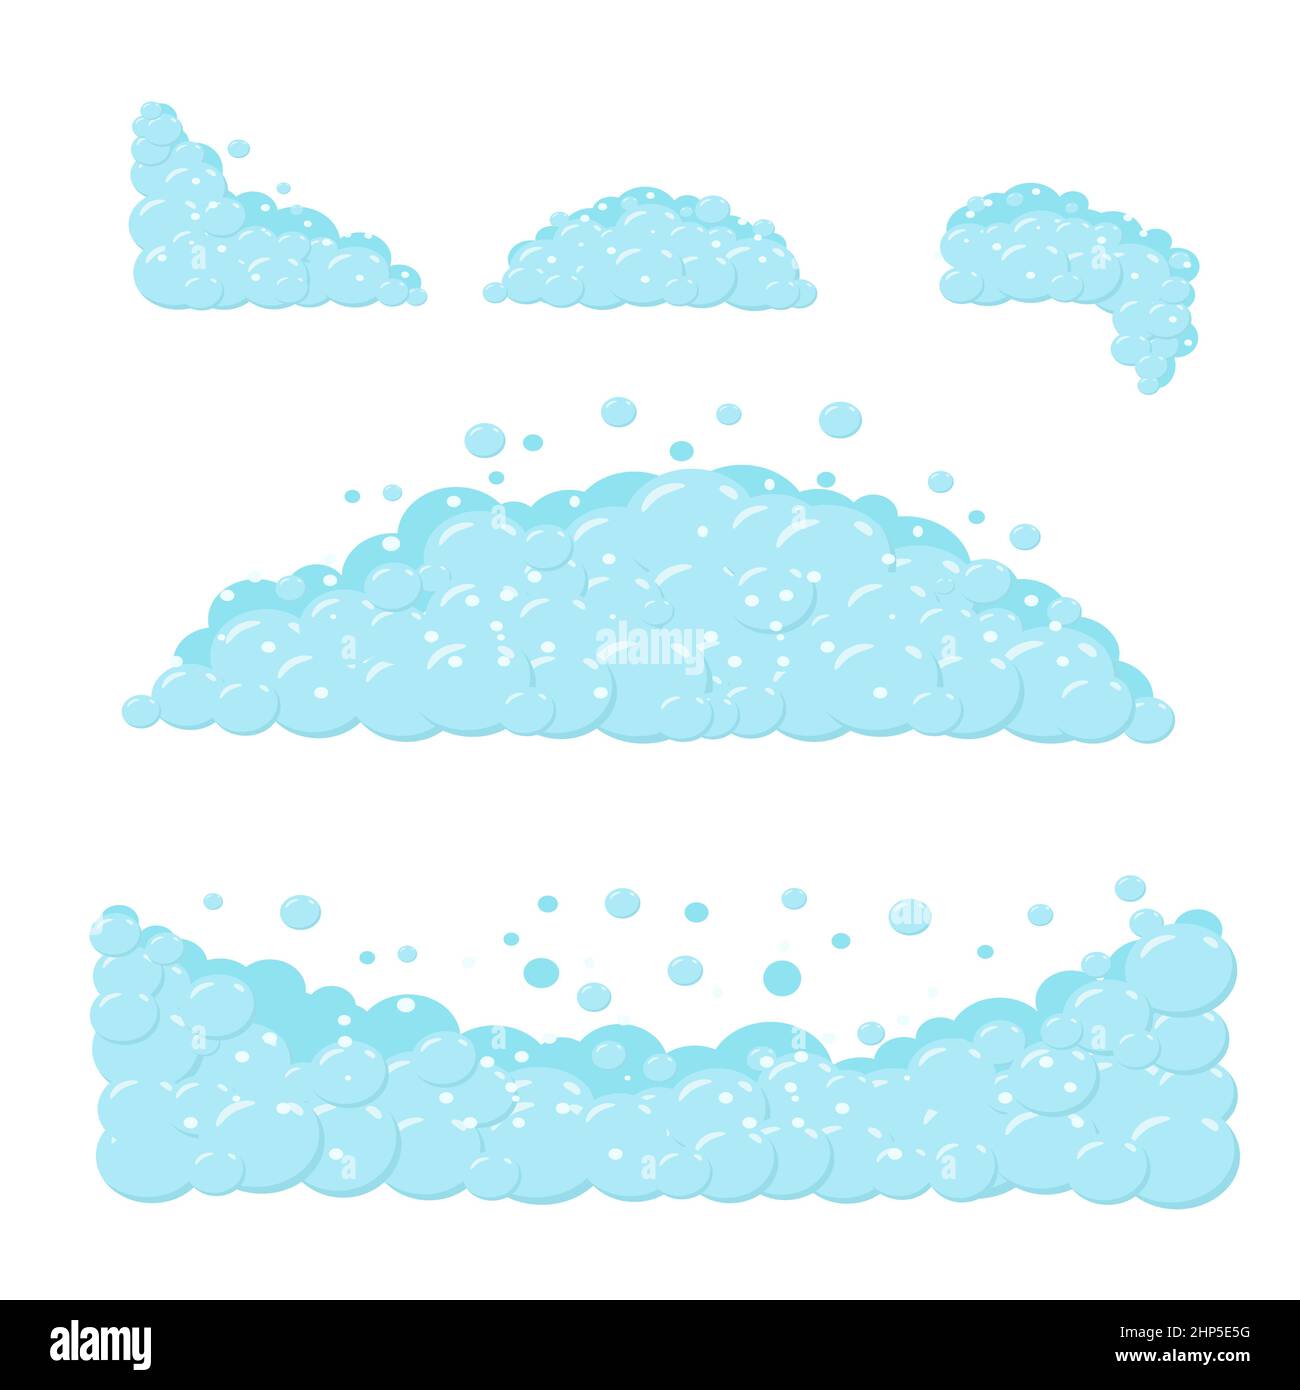 Elemente aus Cartoon Seifenschaum. Vektor-Illustration eines Fragments von Cartoon-Shampoo-Seifenschaum in einer Badewanne auf weißem Hintergrund. Stock Vektor